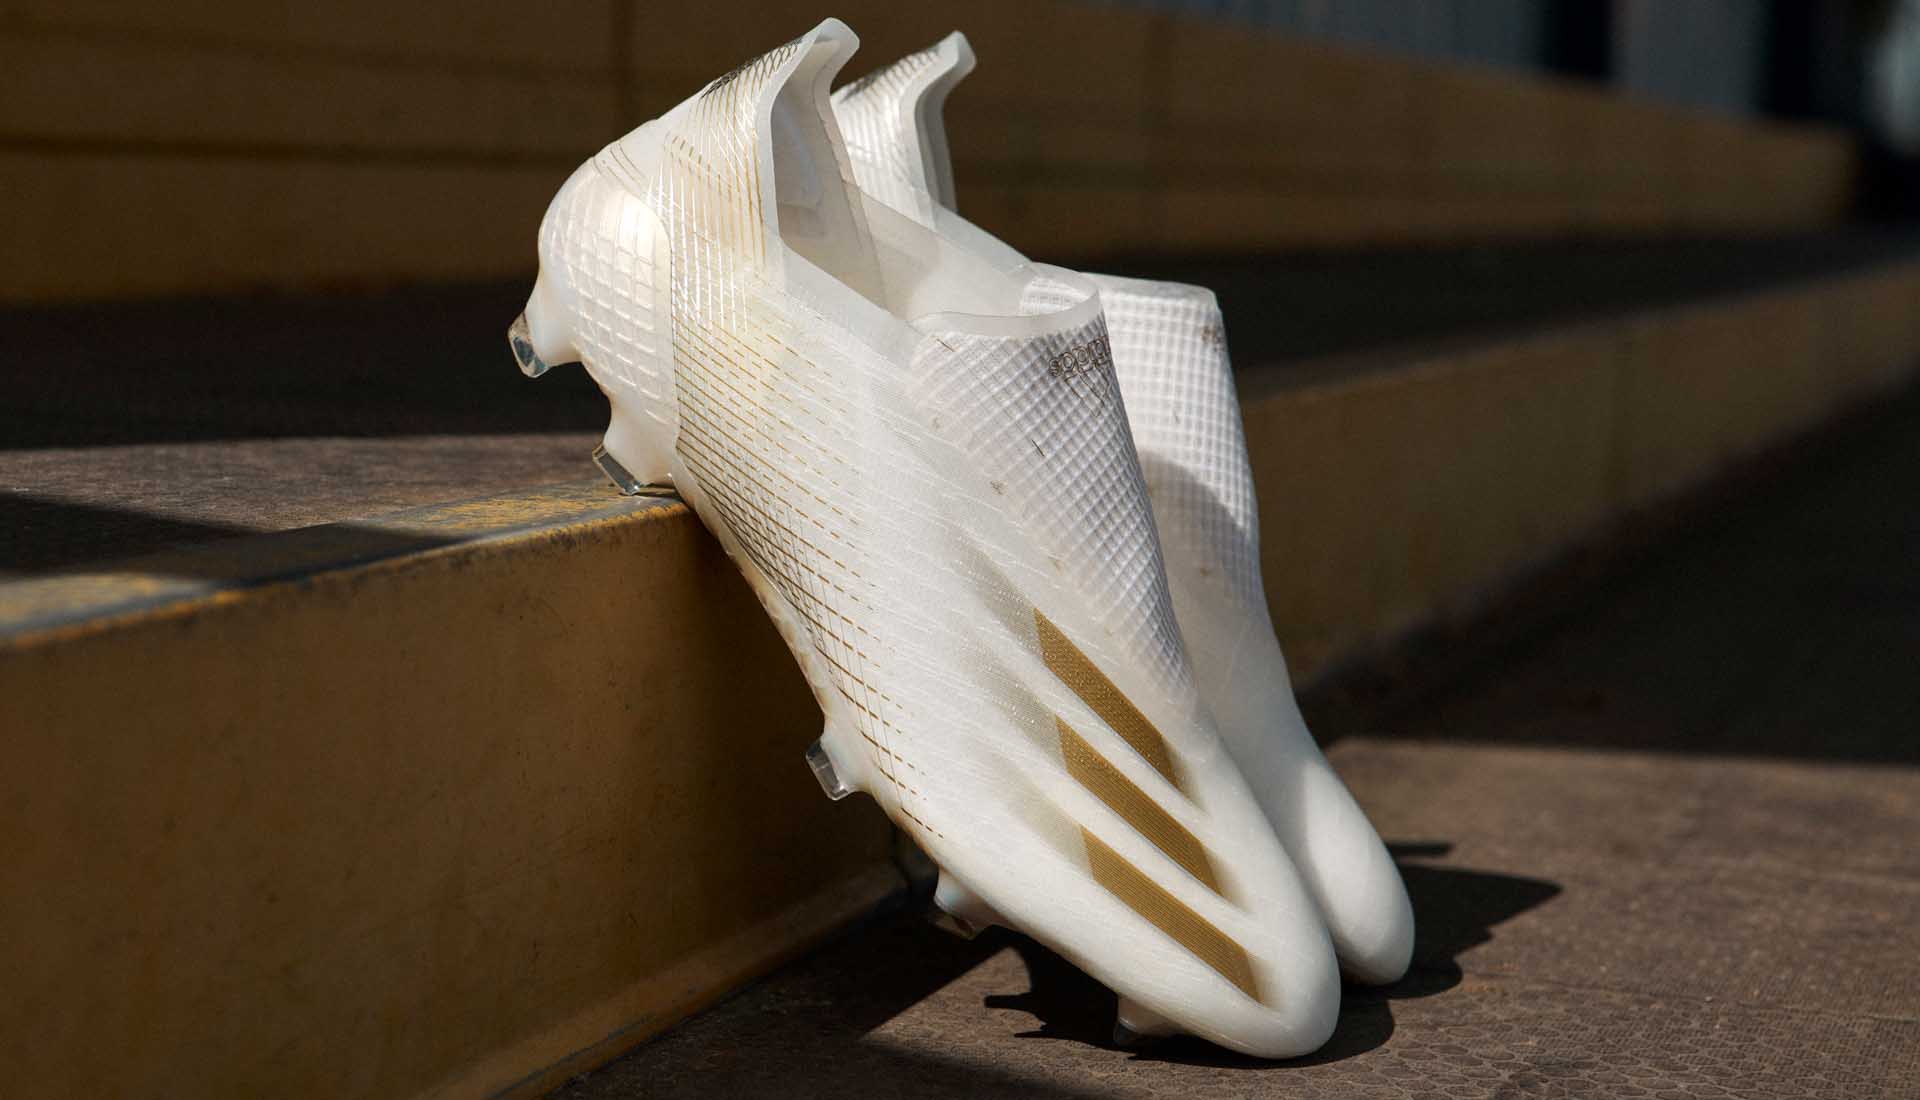 Giày Adidas X20+ Ghosted với thiết kế da và đế giày có trọng lượng nhẹ